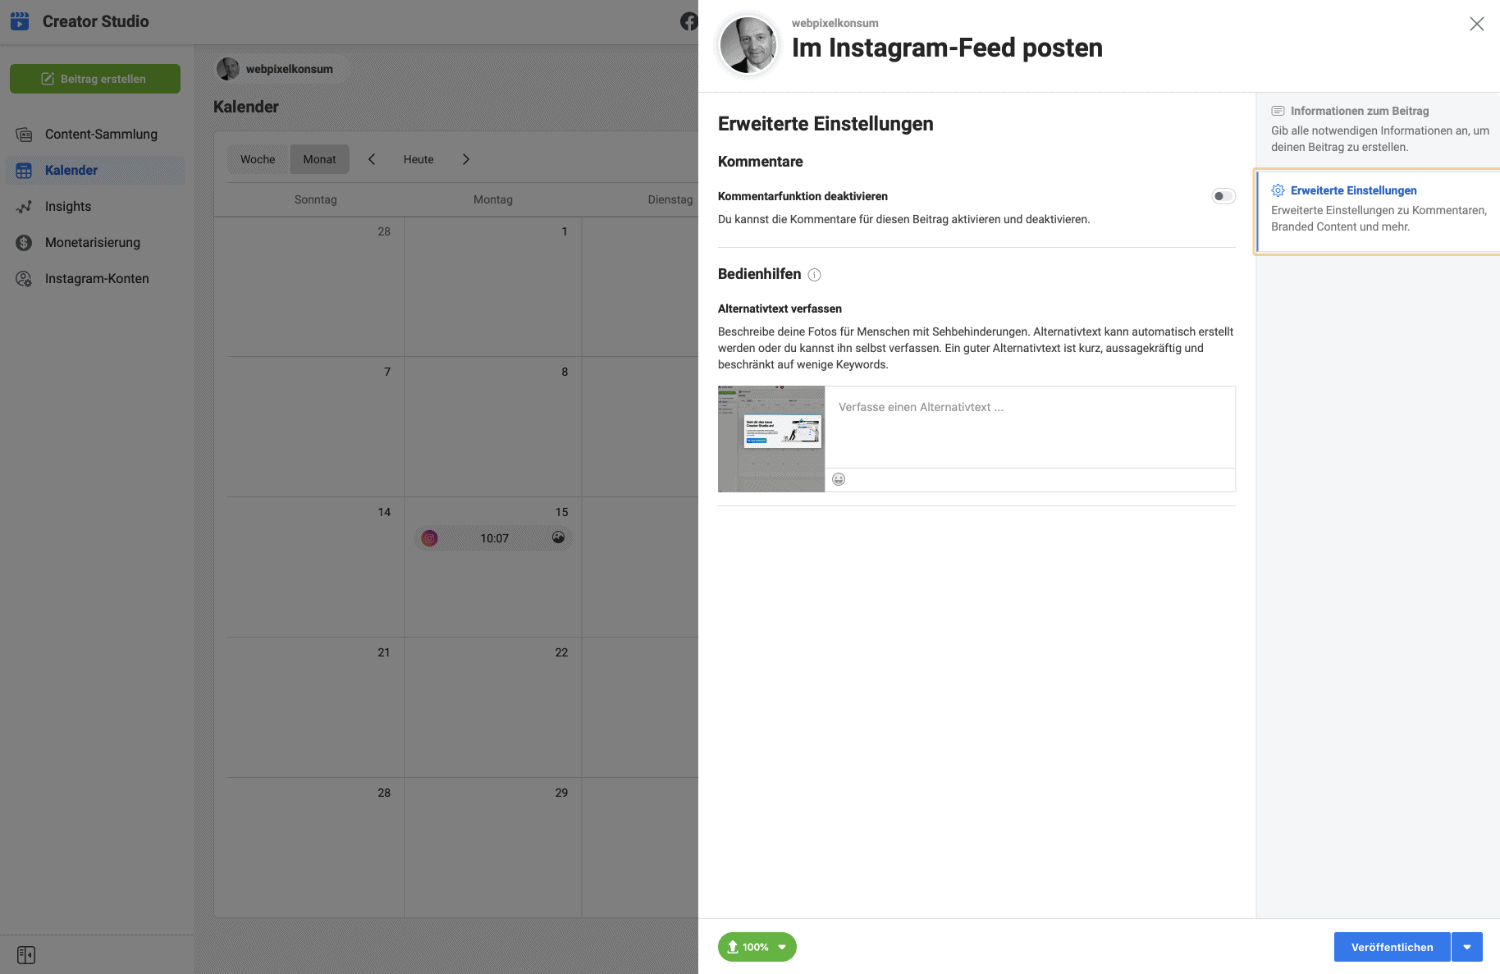 Diese Abbildung zeigt die erweiterte Einstellung zum Erstellen von Instagram Post im Creator Studio von Instagram